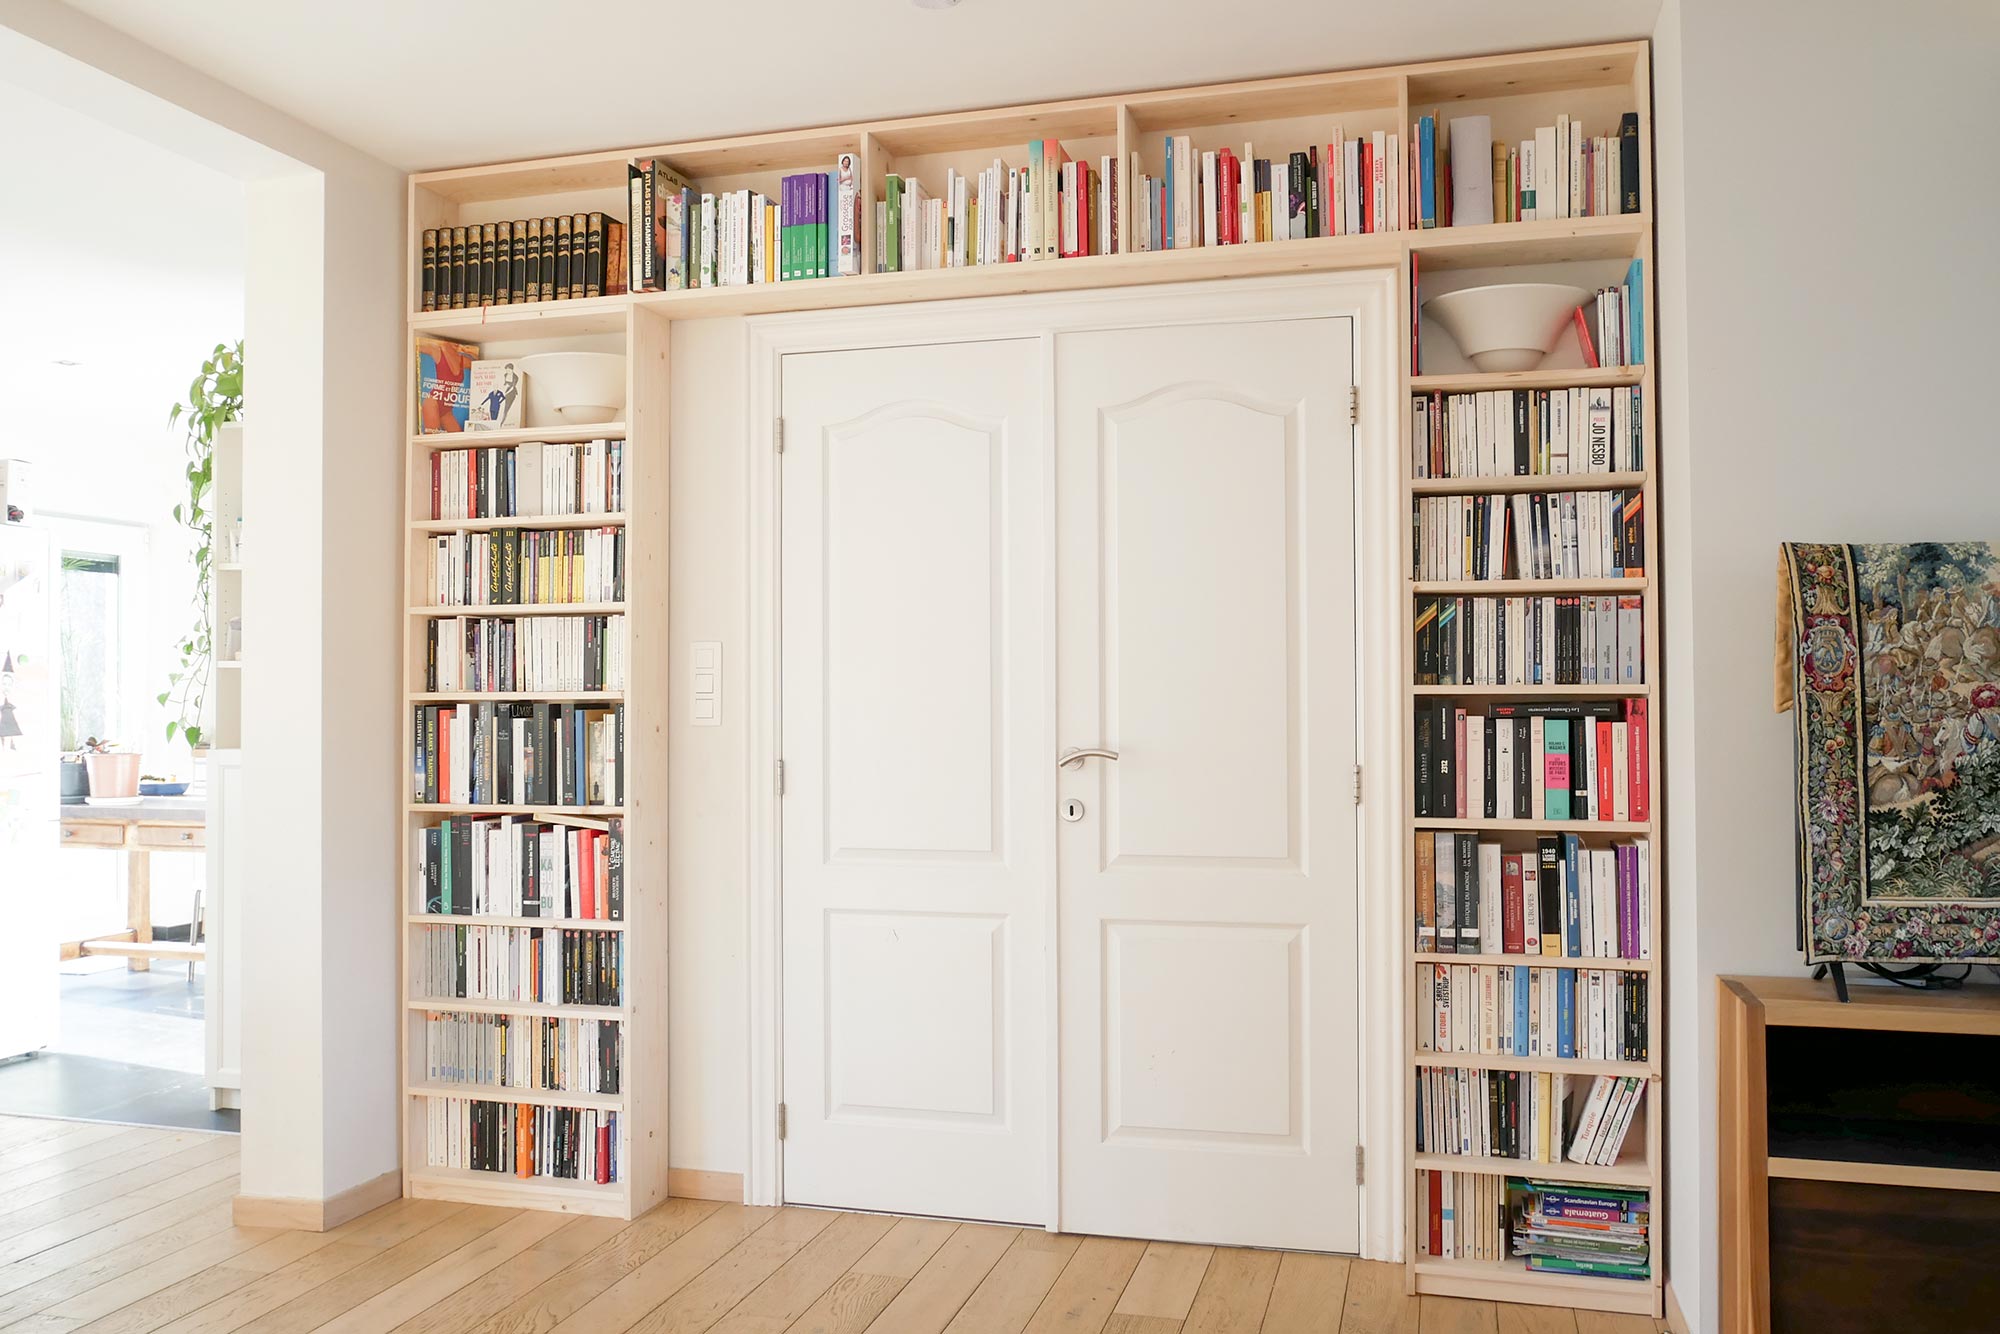 bibliothèque en sapin intégrée autour d'une double porte, avec livres